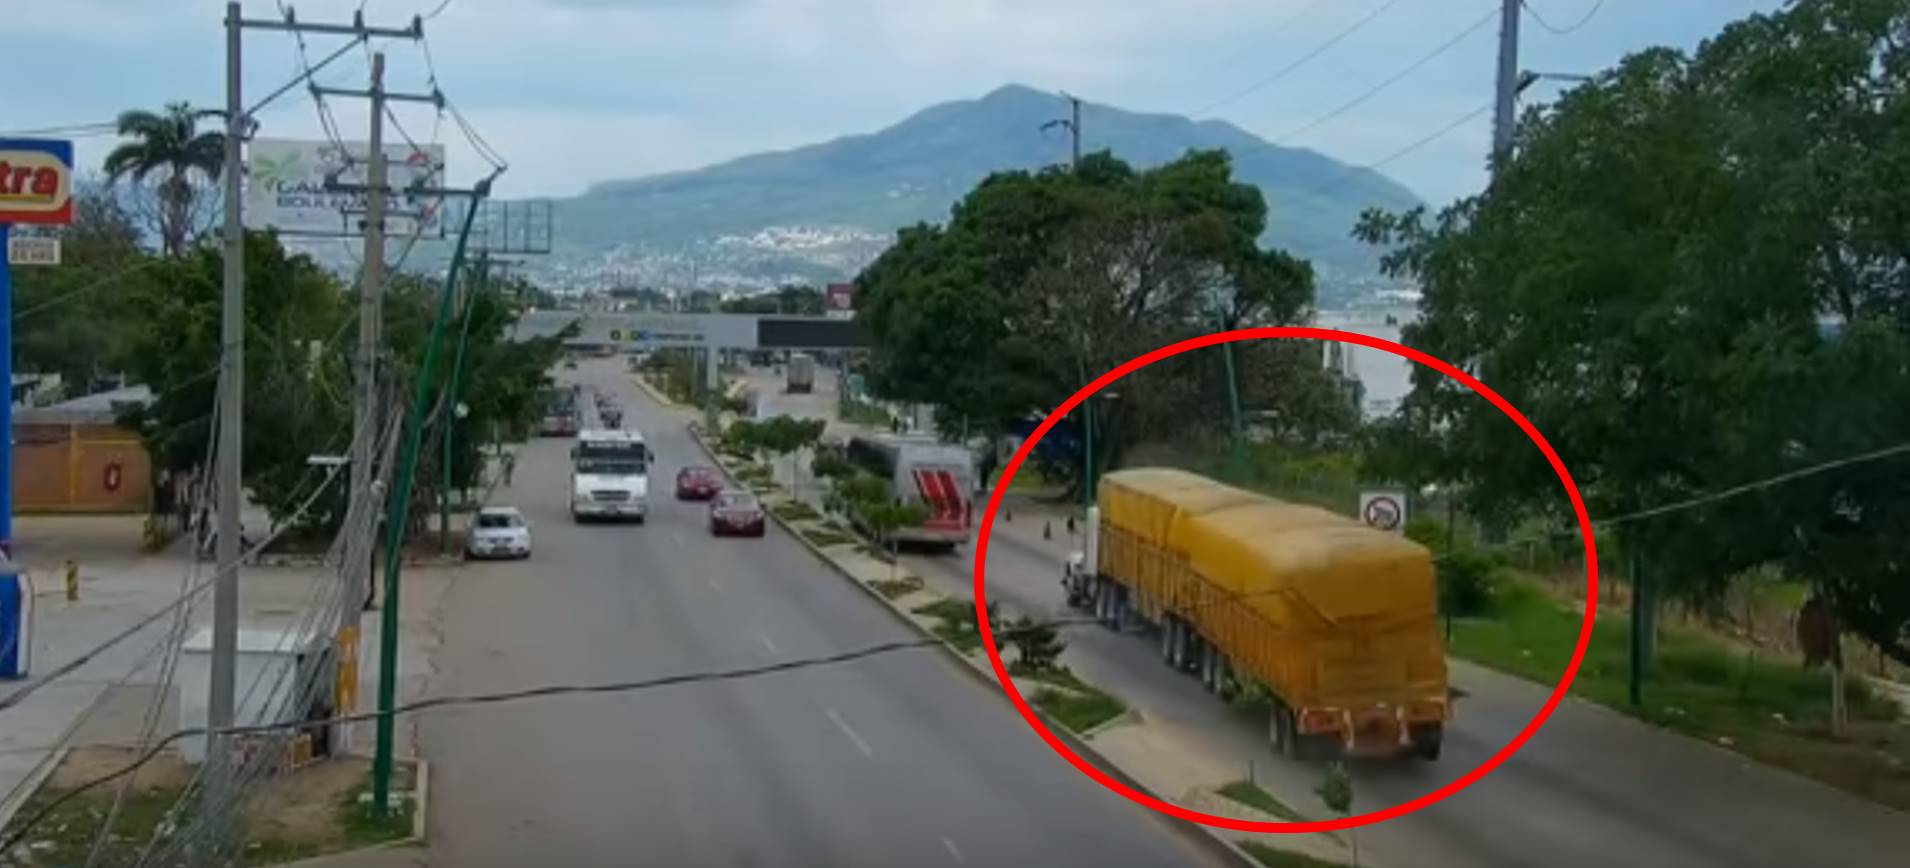 VIDEO: Tráiler sin frenos mata a 7 personas en Chiapas